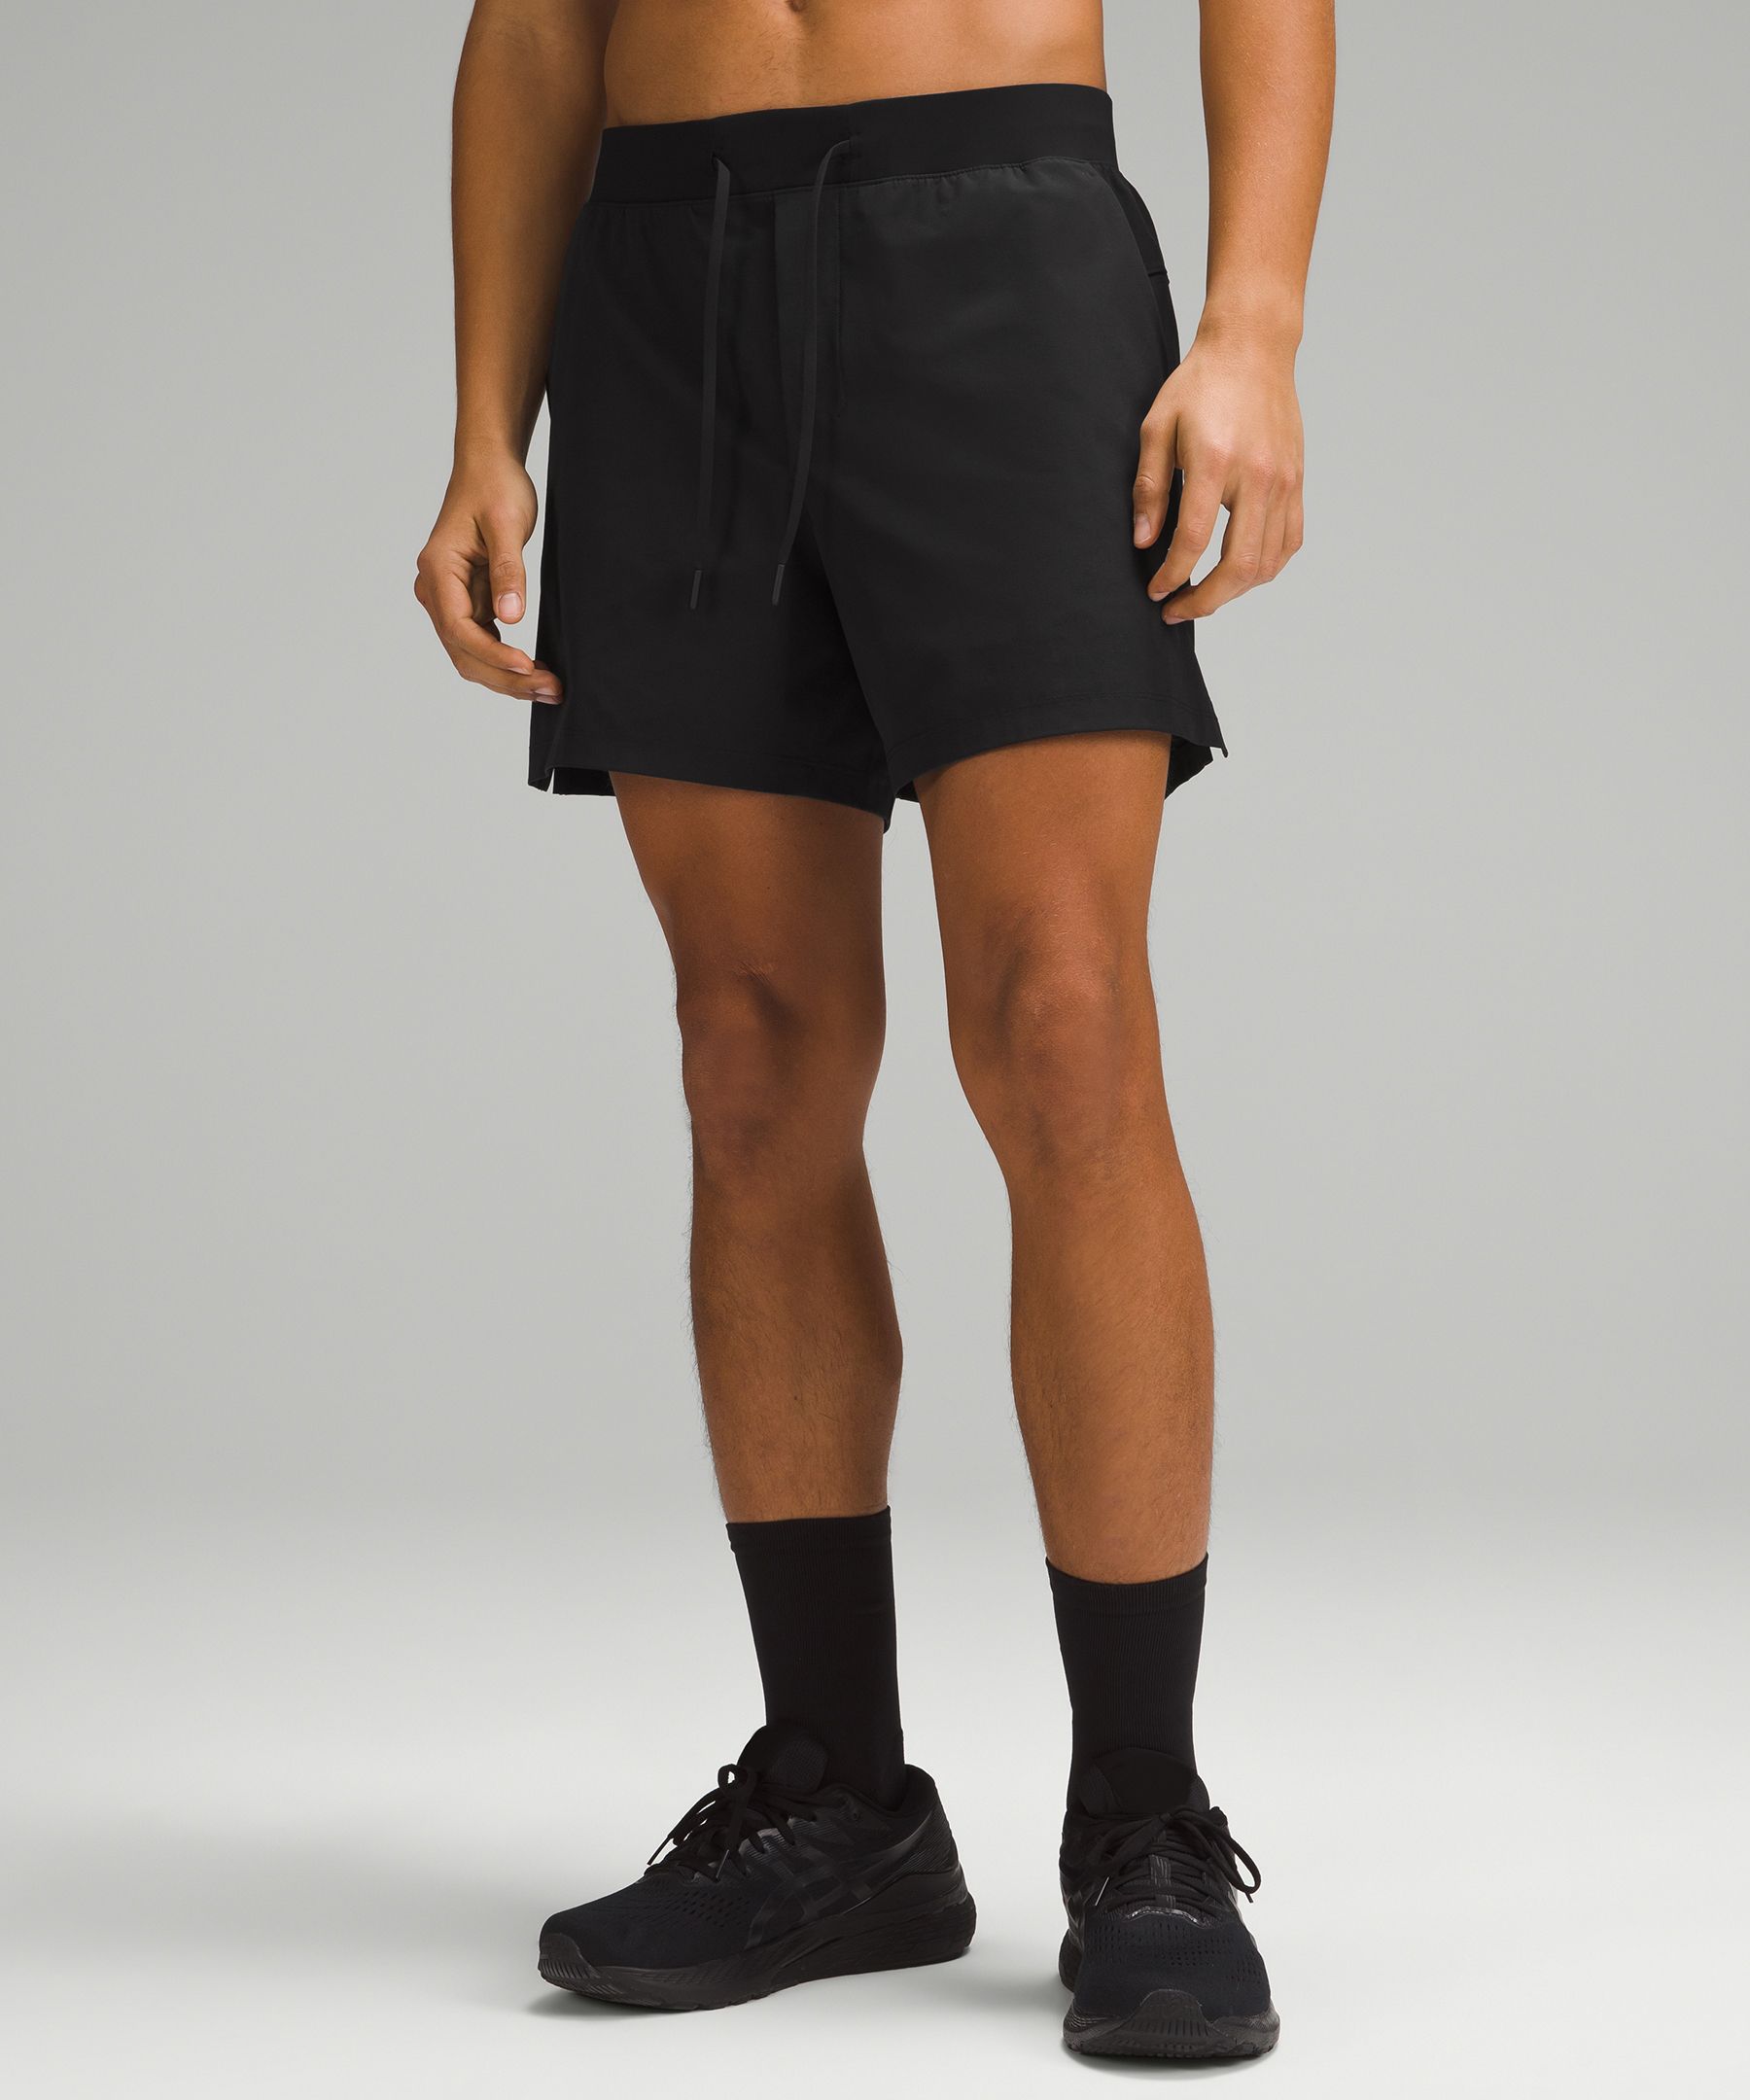 Men's 5 Inch Inseam Shorts